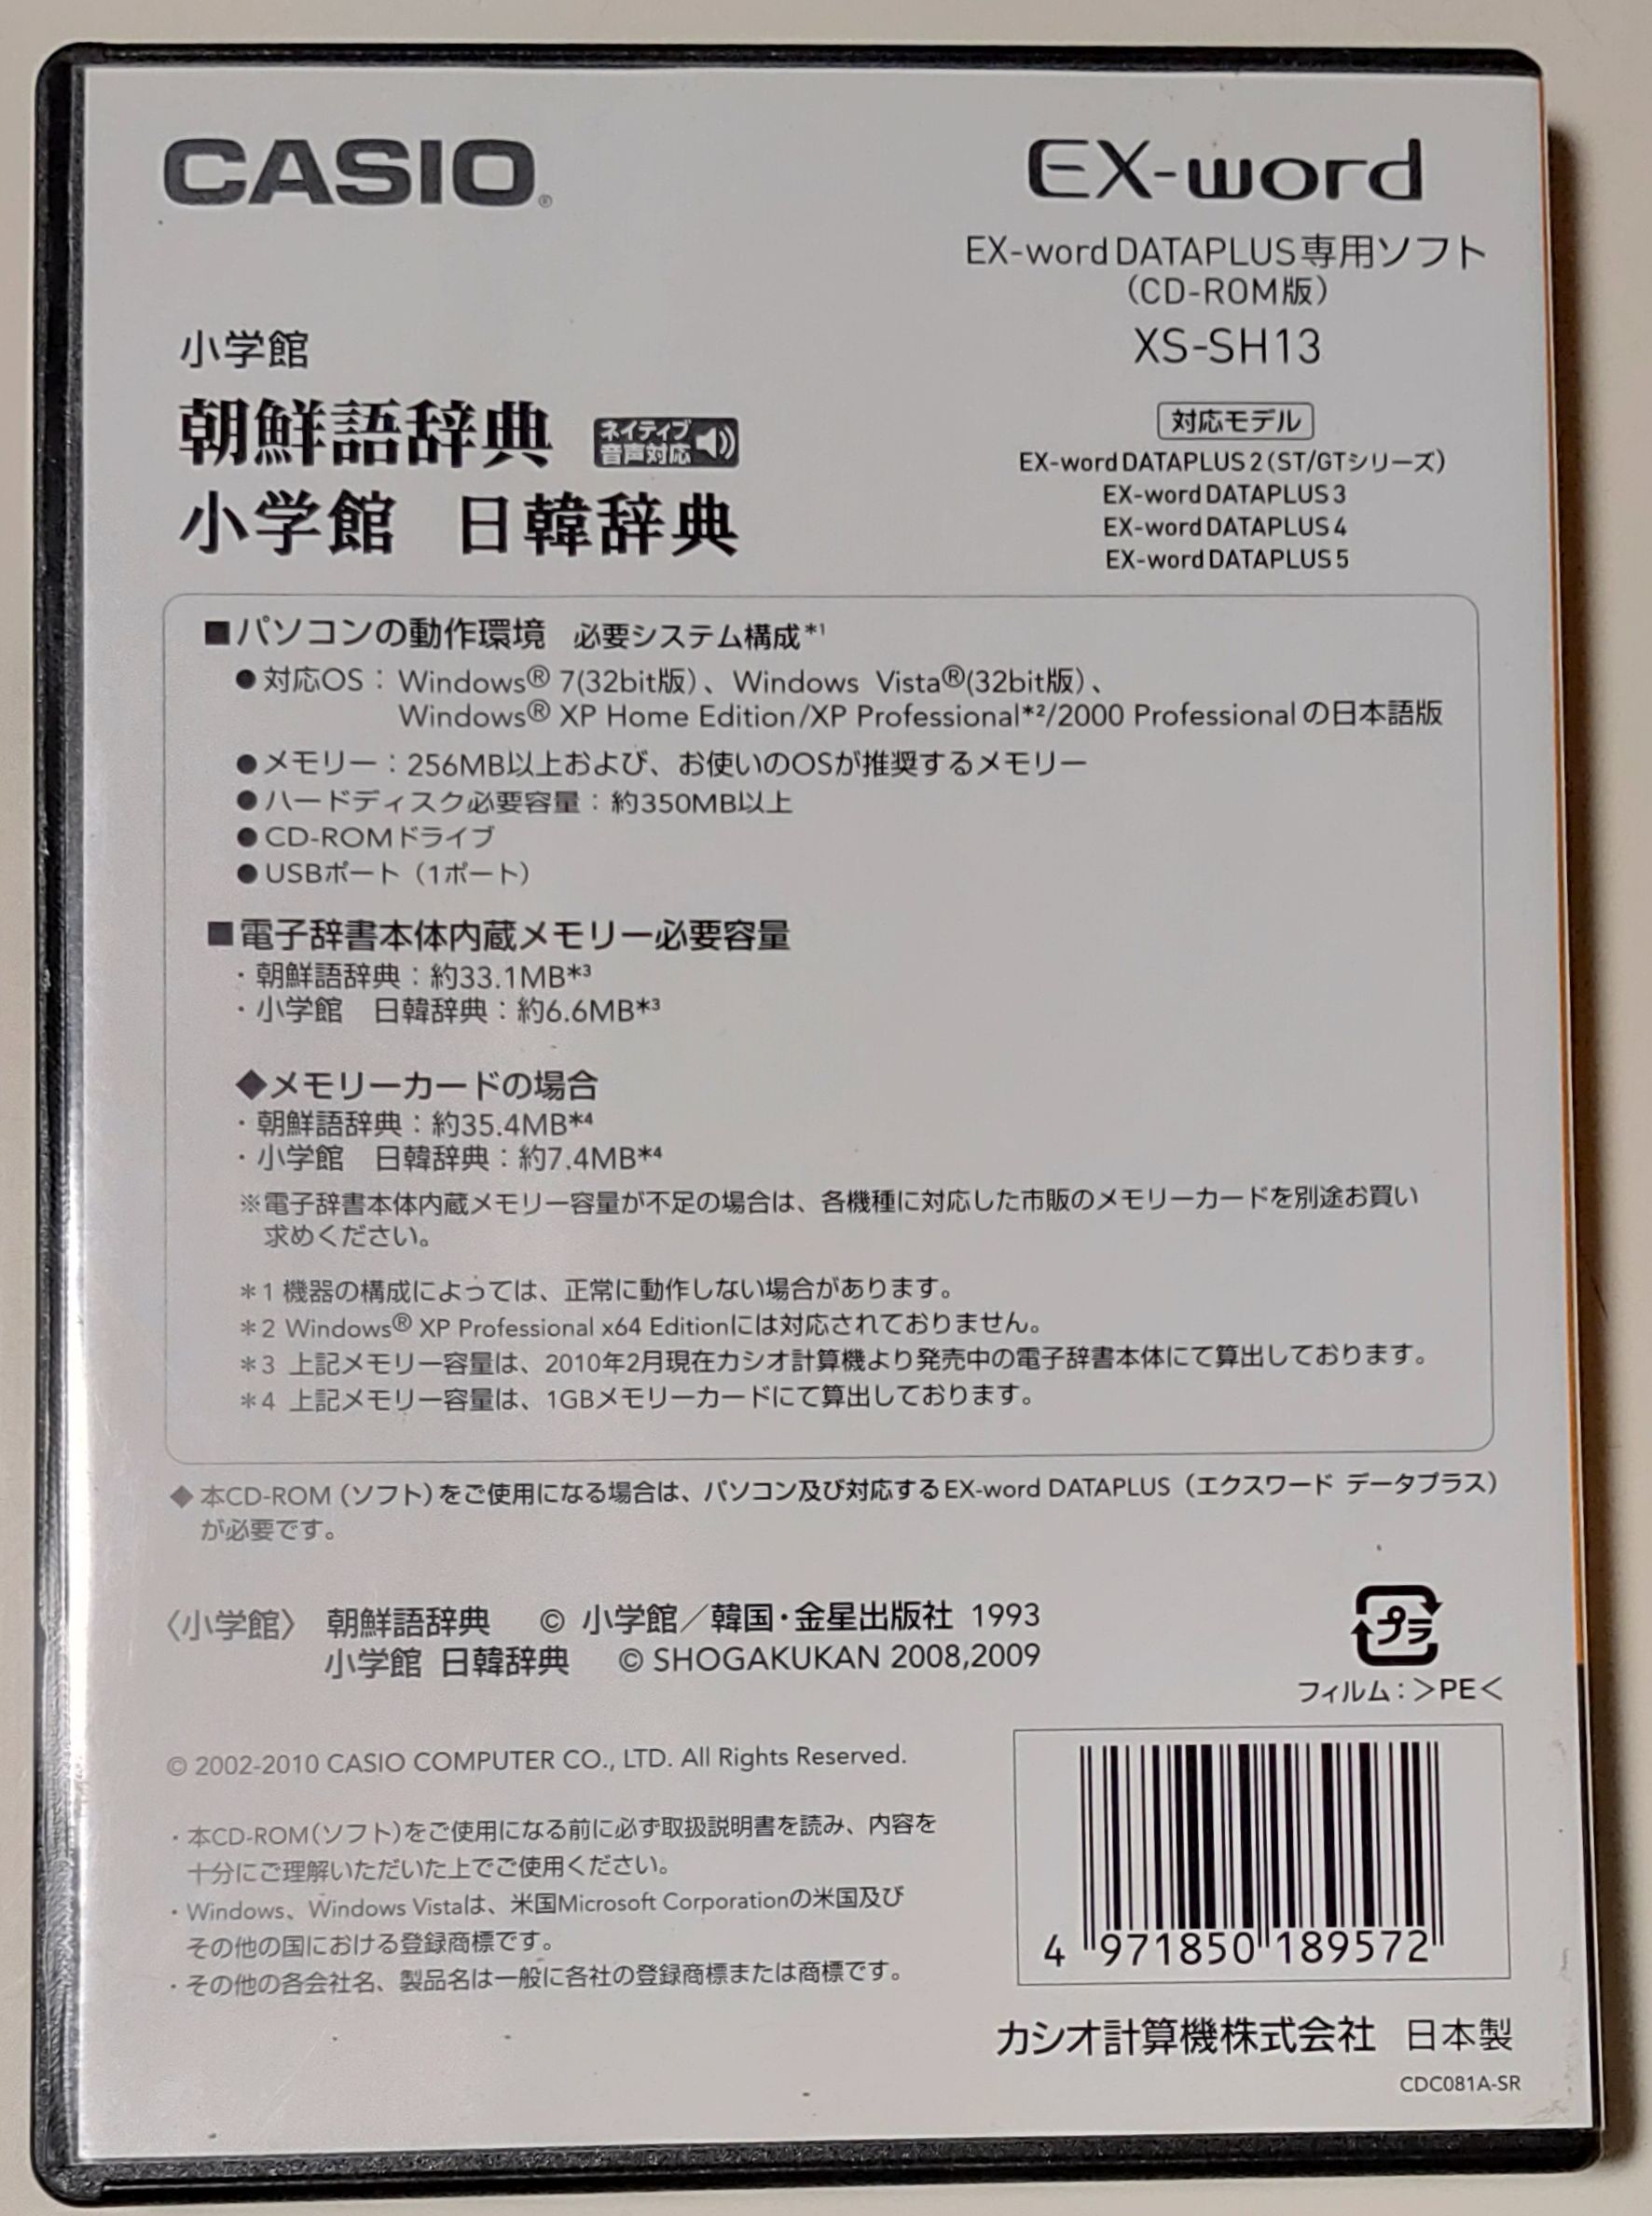 海外 小学館朝鮮語ソフト Casio電子辞書